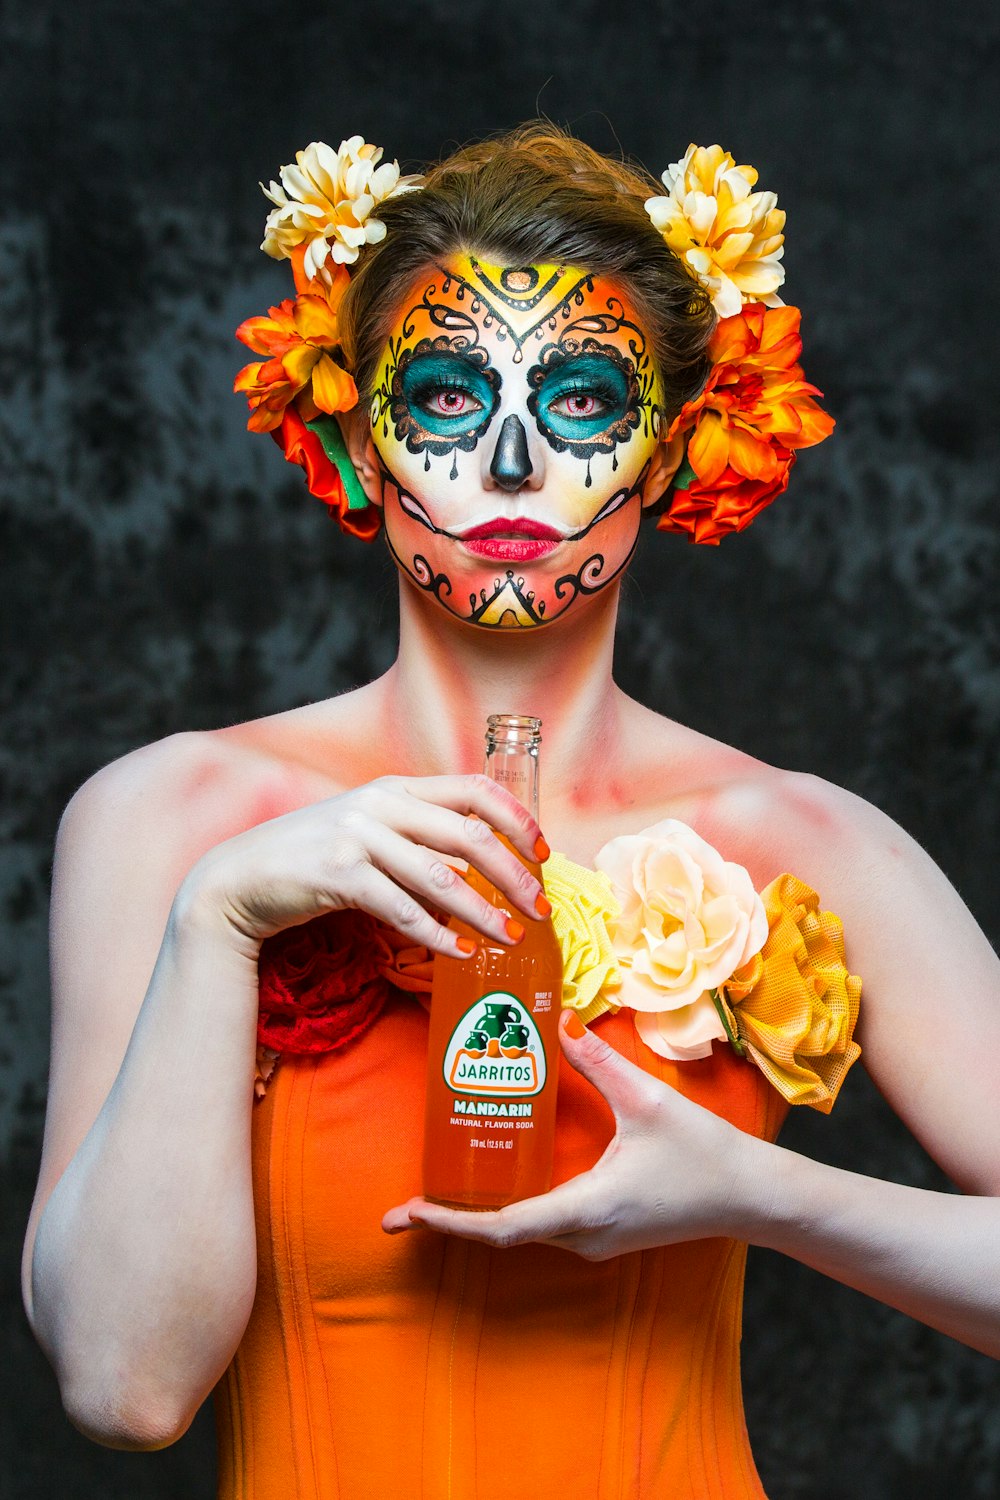 woman holding orange labeled bottle